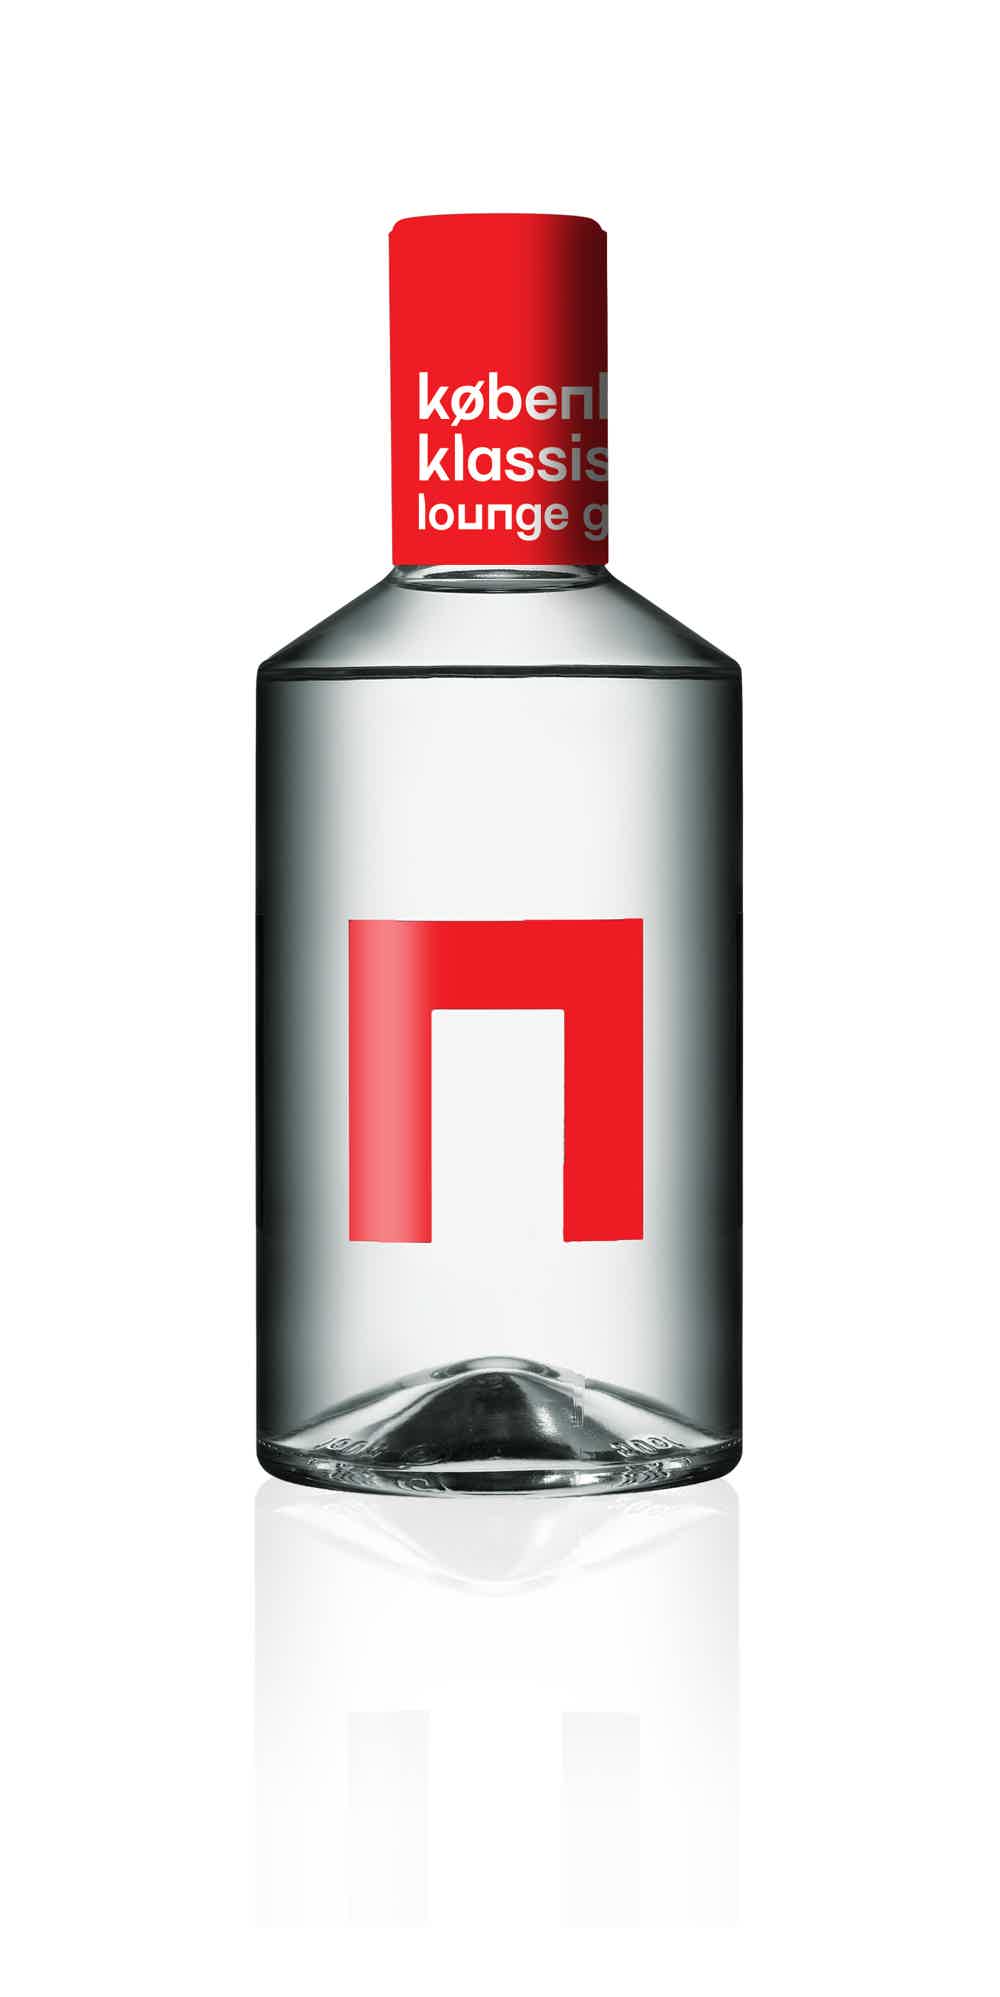 København Klassisk Lounge Gin 40.0% 0.5L, Spirits